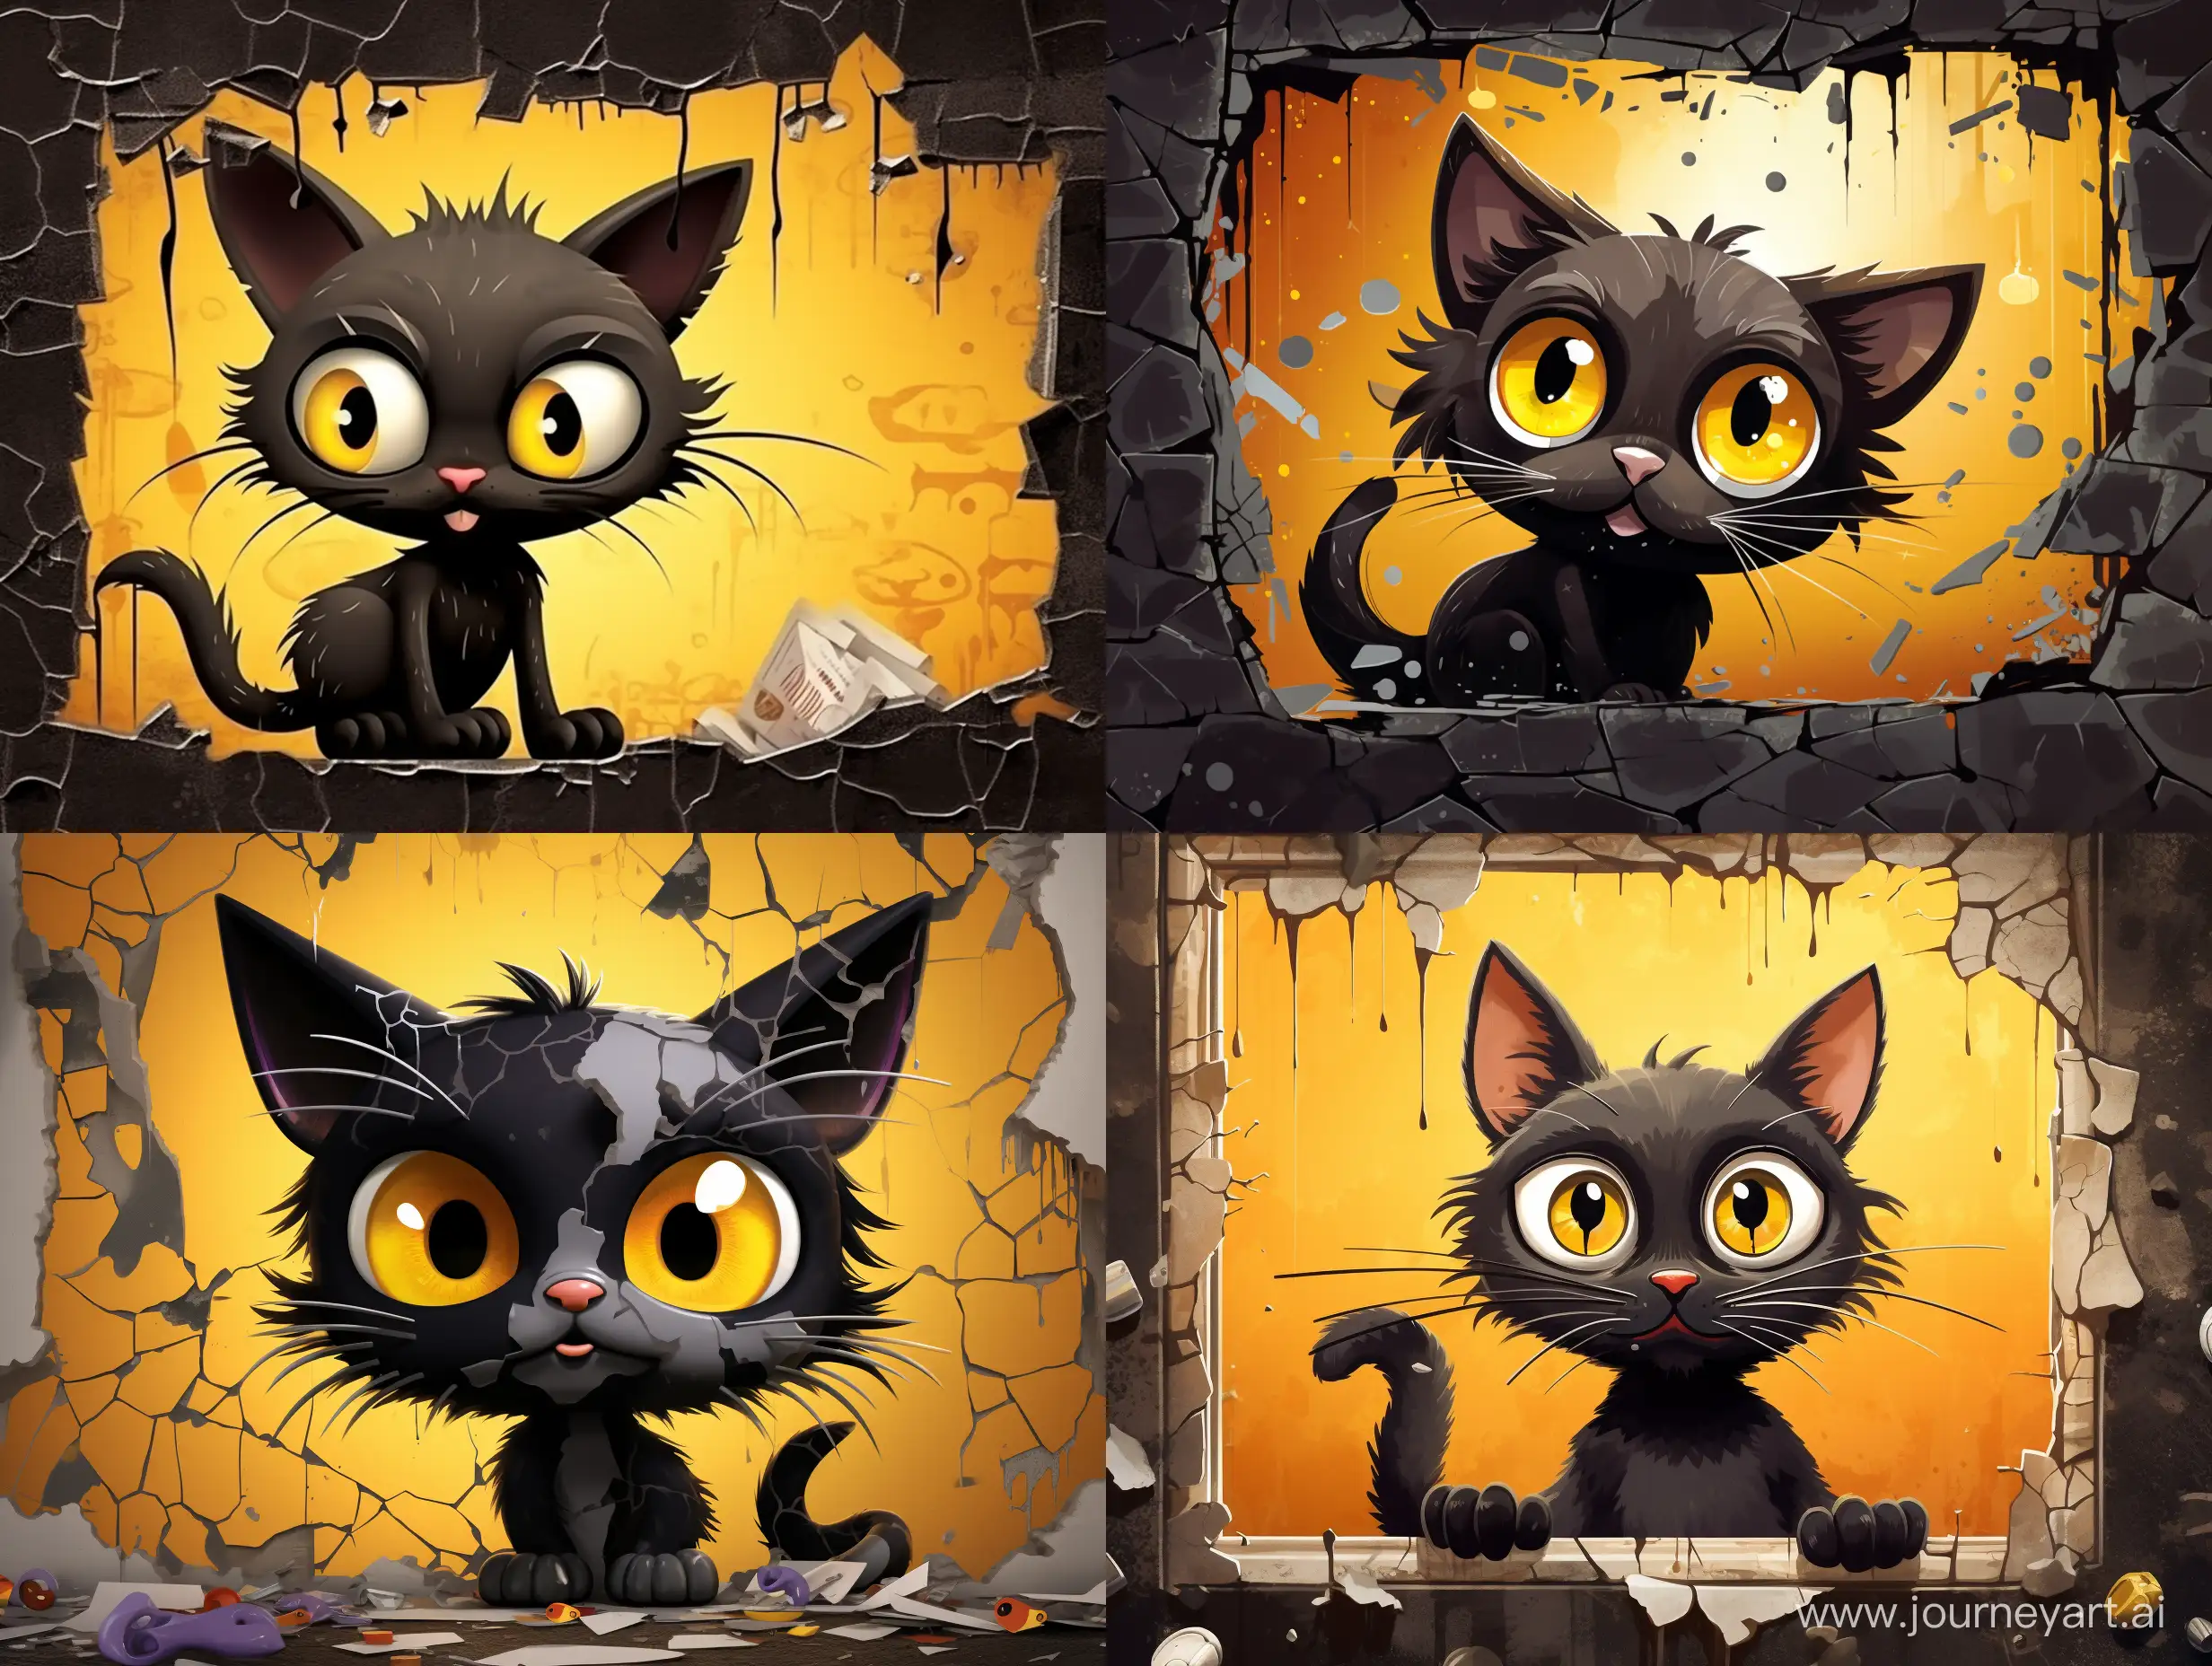 иллюстрация,шарж,  черный пучеглазый, потешный маленький кот,
с жёлтыми очень огромными глазами, смотрит невинным взглядом, на стене пятна, порванные обои, следы когтей, куски обоев  свисают, micro detailing, Panoramic painting, wide shot angle